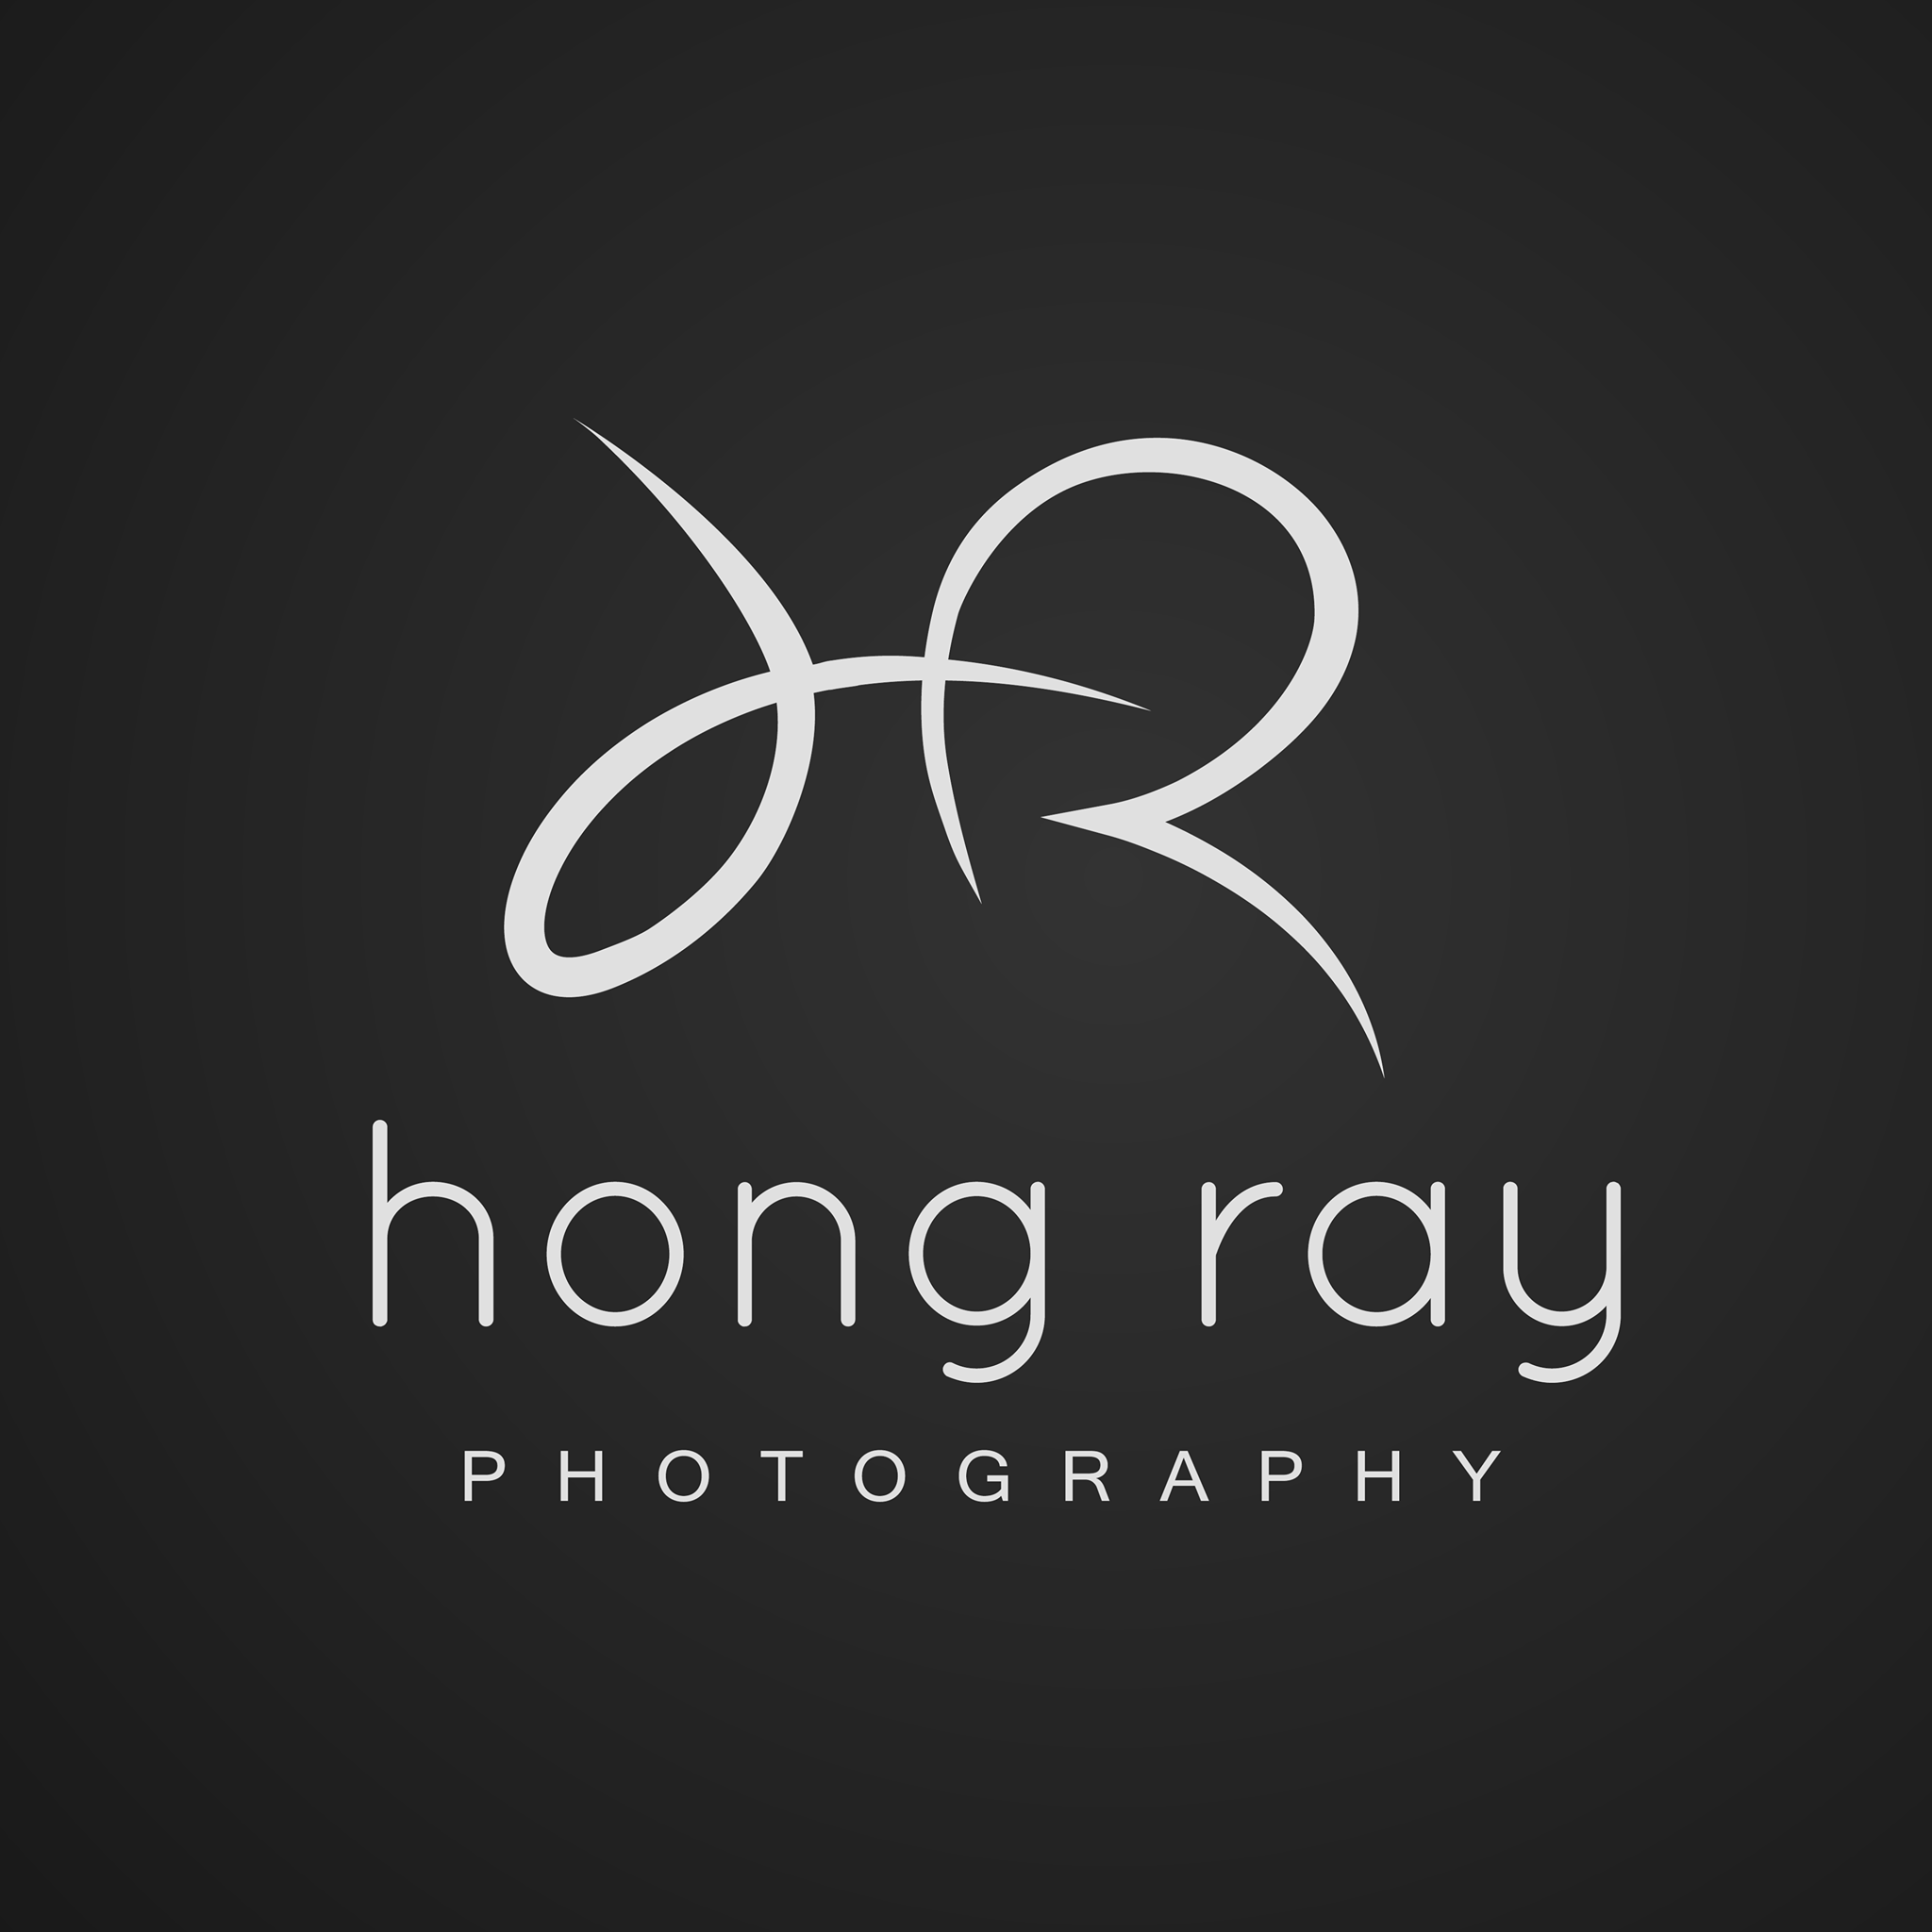 Hong Ray Photography